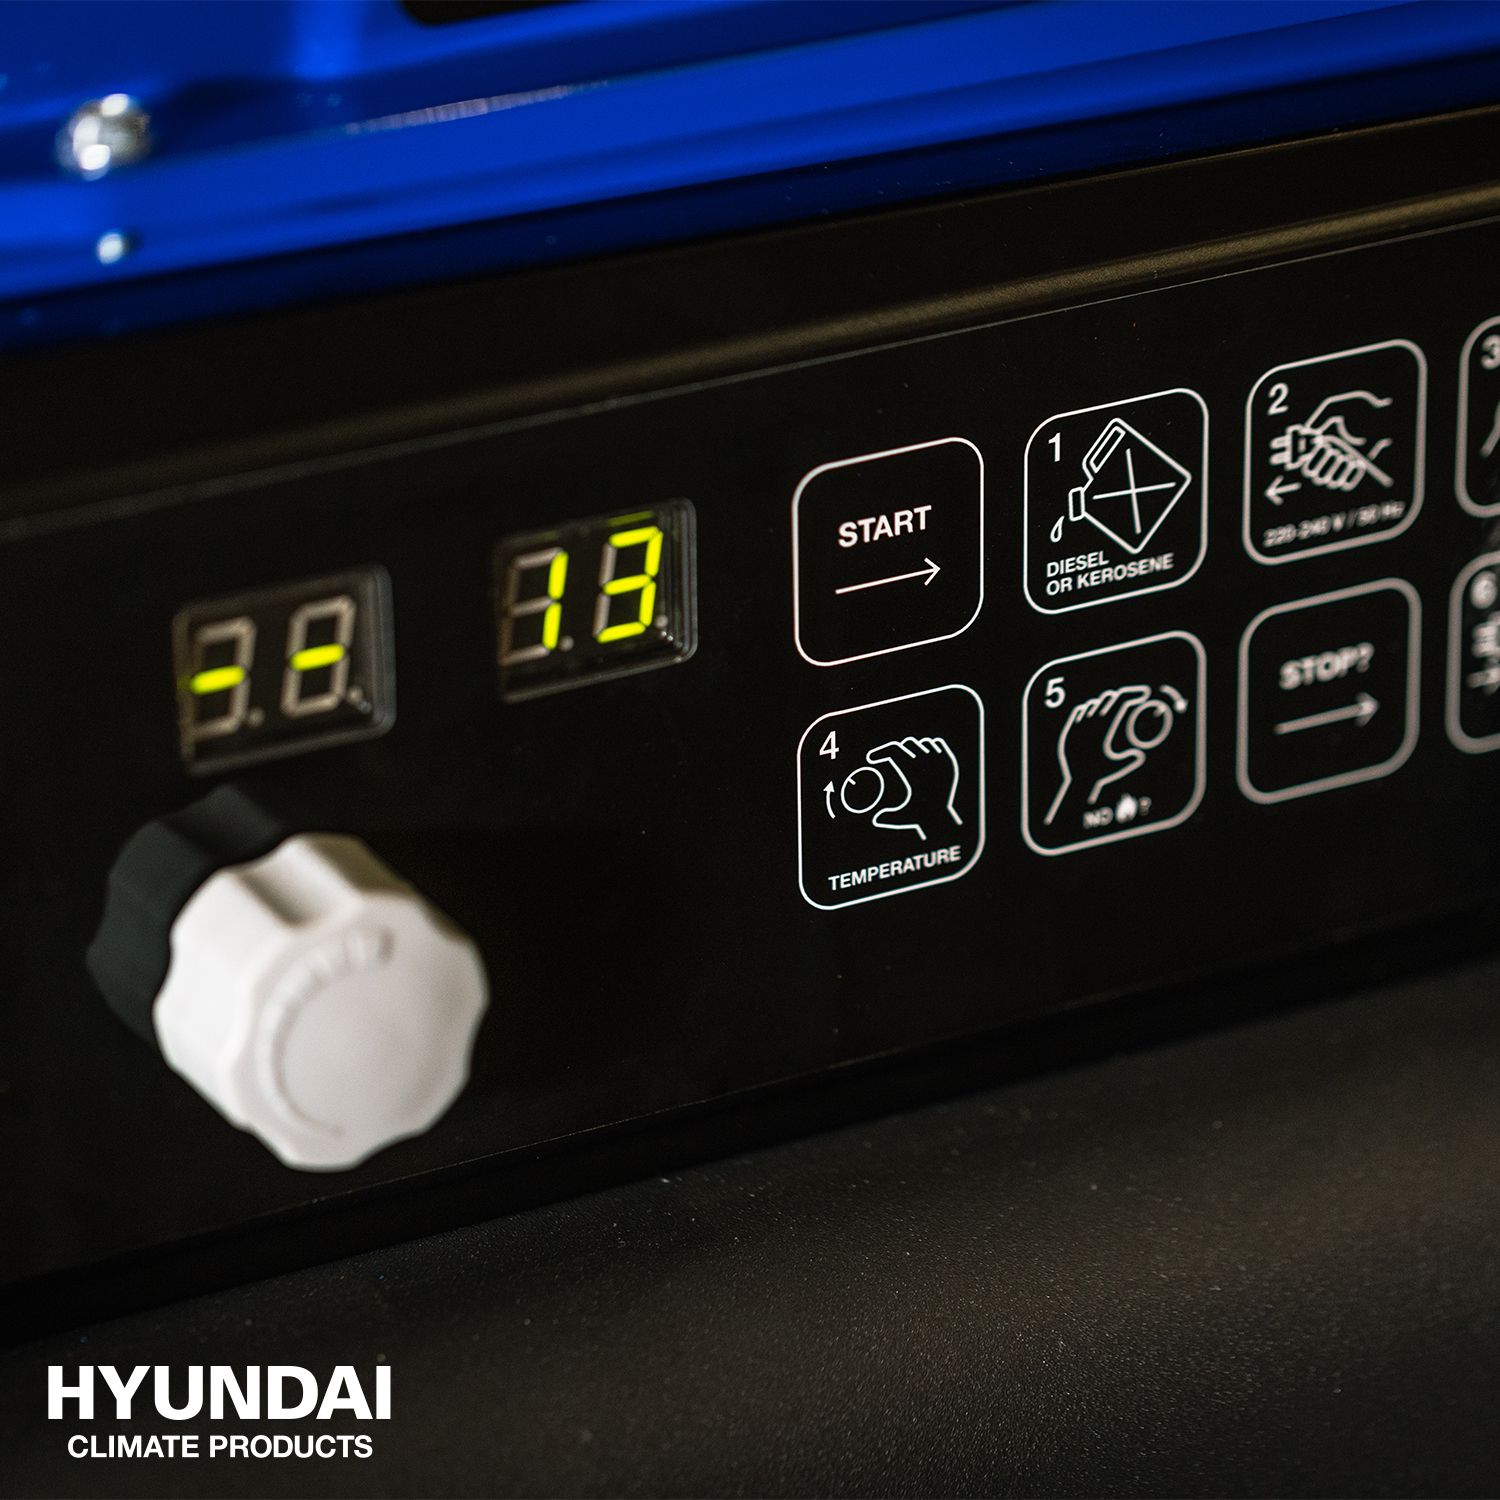 Hyundai warmtekanon diesel 50 kW